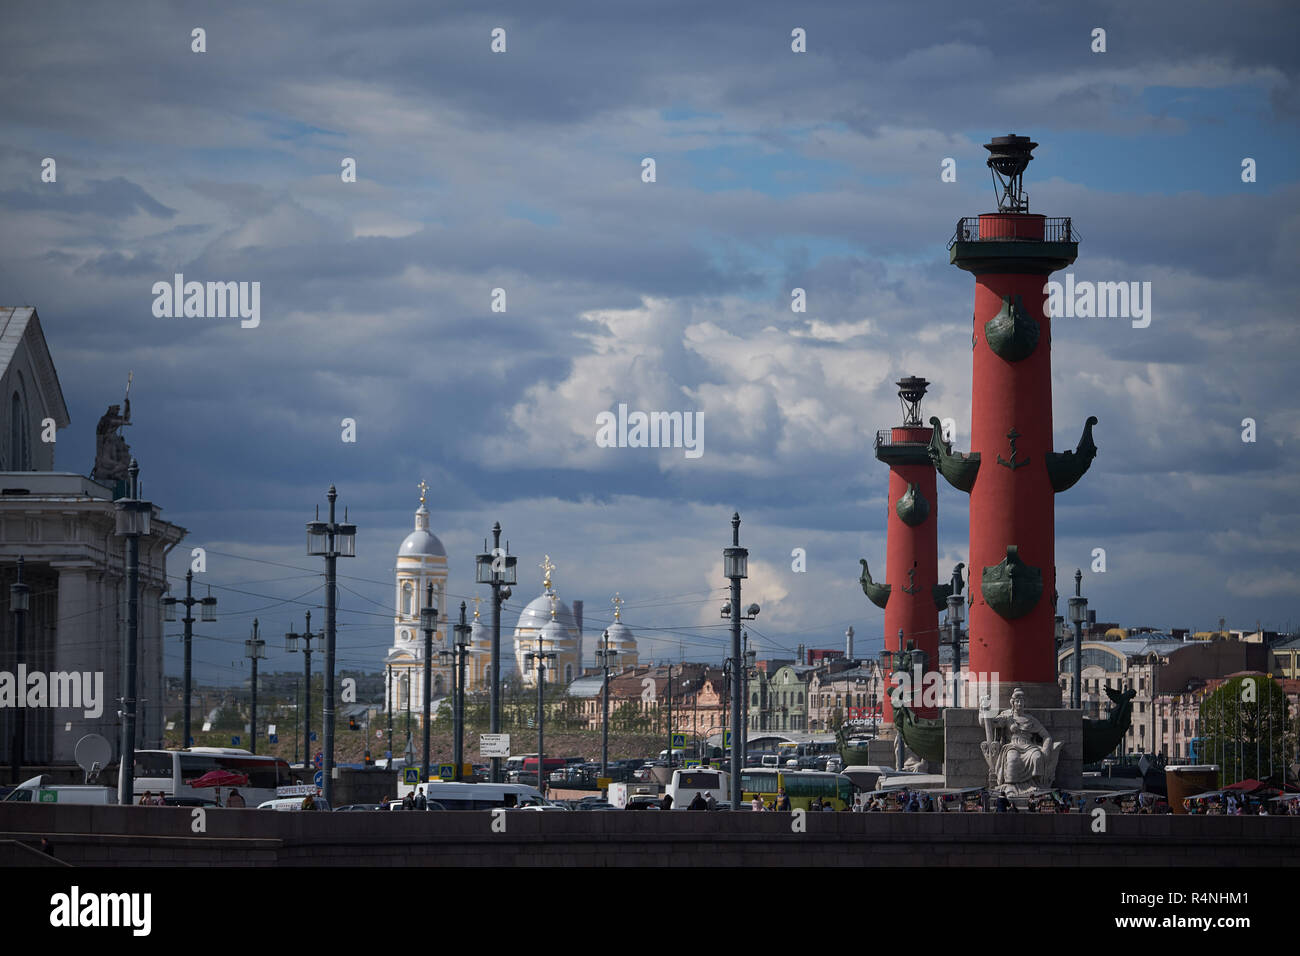 Colonnes rostrales sur la pointe de l'île Vassilievski est l'un des symboles de Saint-Pétersbourg, Russie Banque D'Images